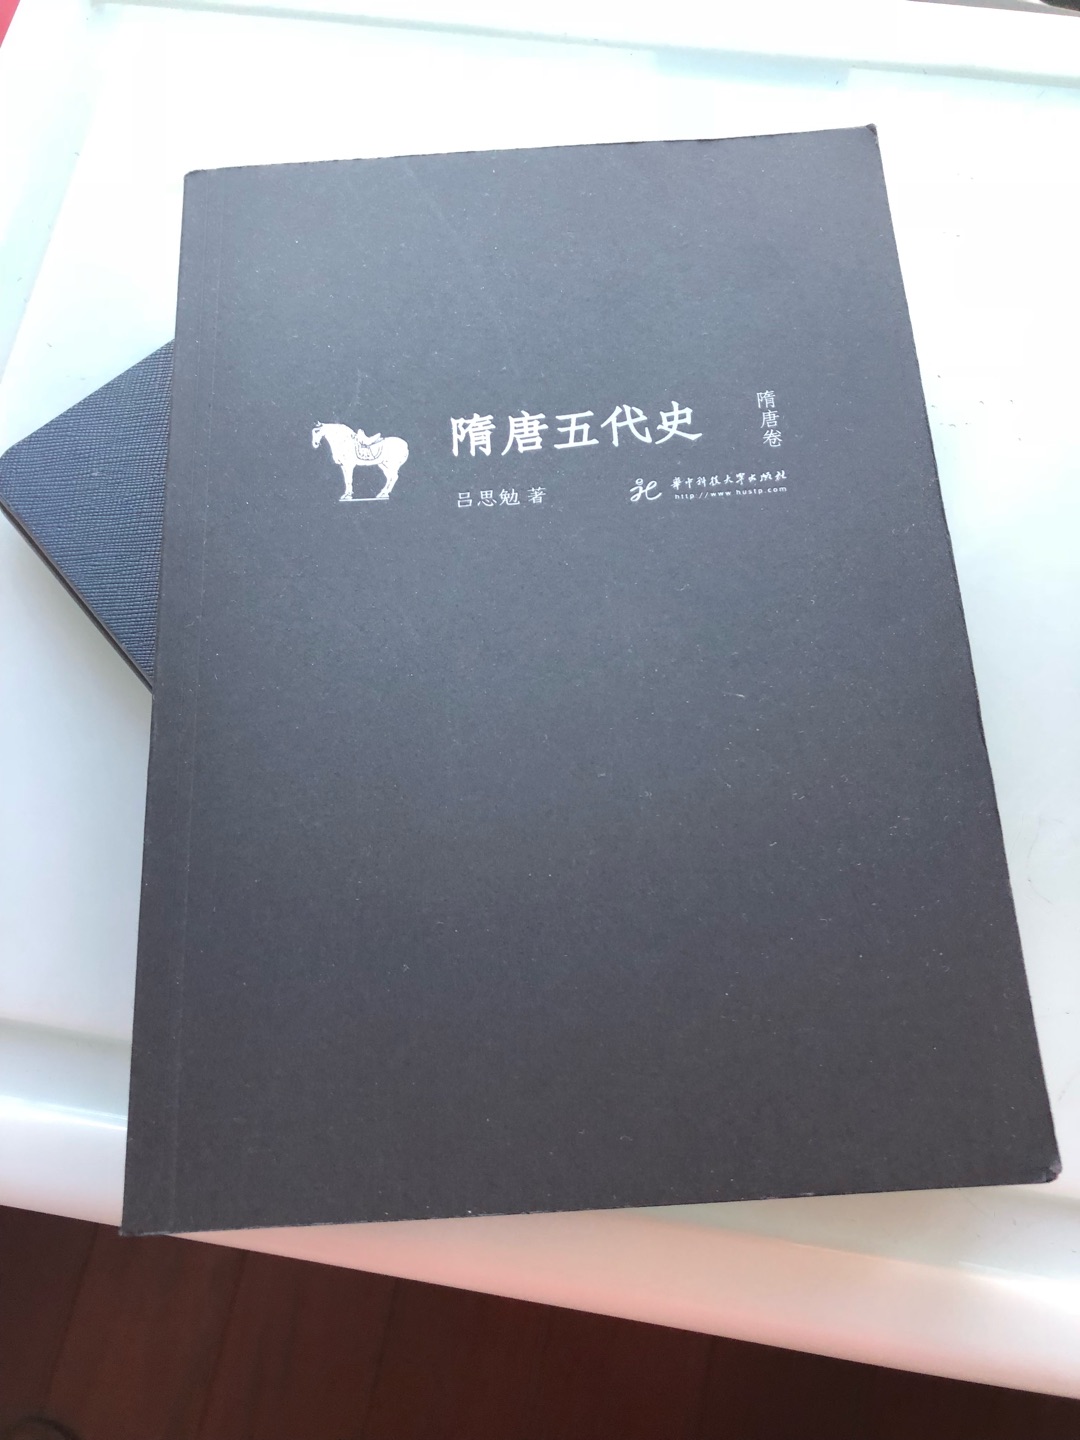 大师的作品，白话中国史，通俗易懂，非常好的一套丛书。